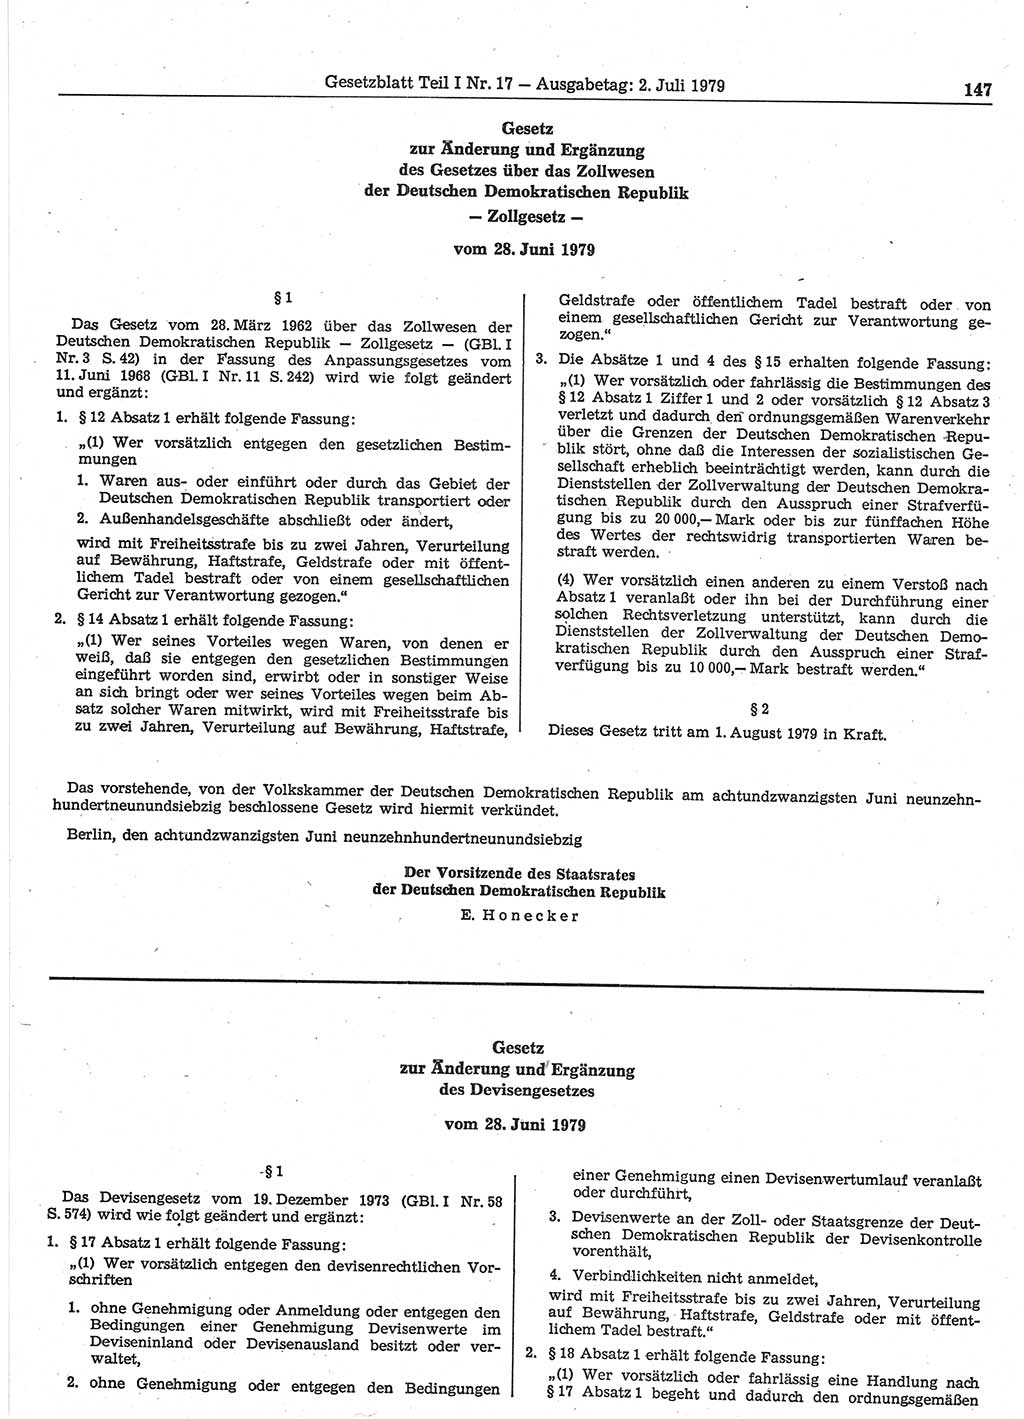 Gesetzblatt (GBl.) der Deutschen Demokratischen Republik (DDR) Teil Ⅰ 1979, Seite 147 (GBl. DDR Ⅰ 1979, S. 147)